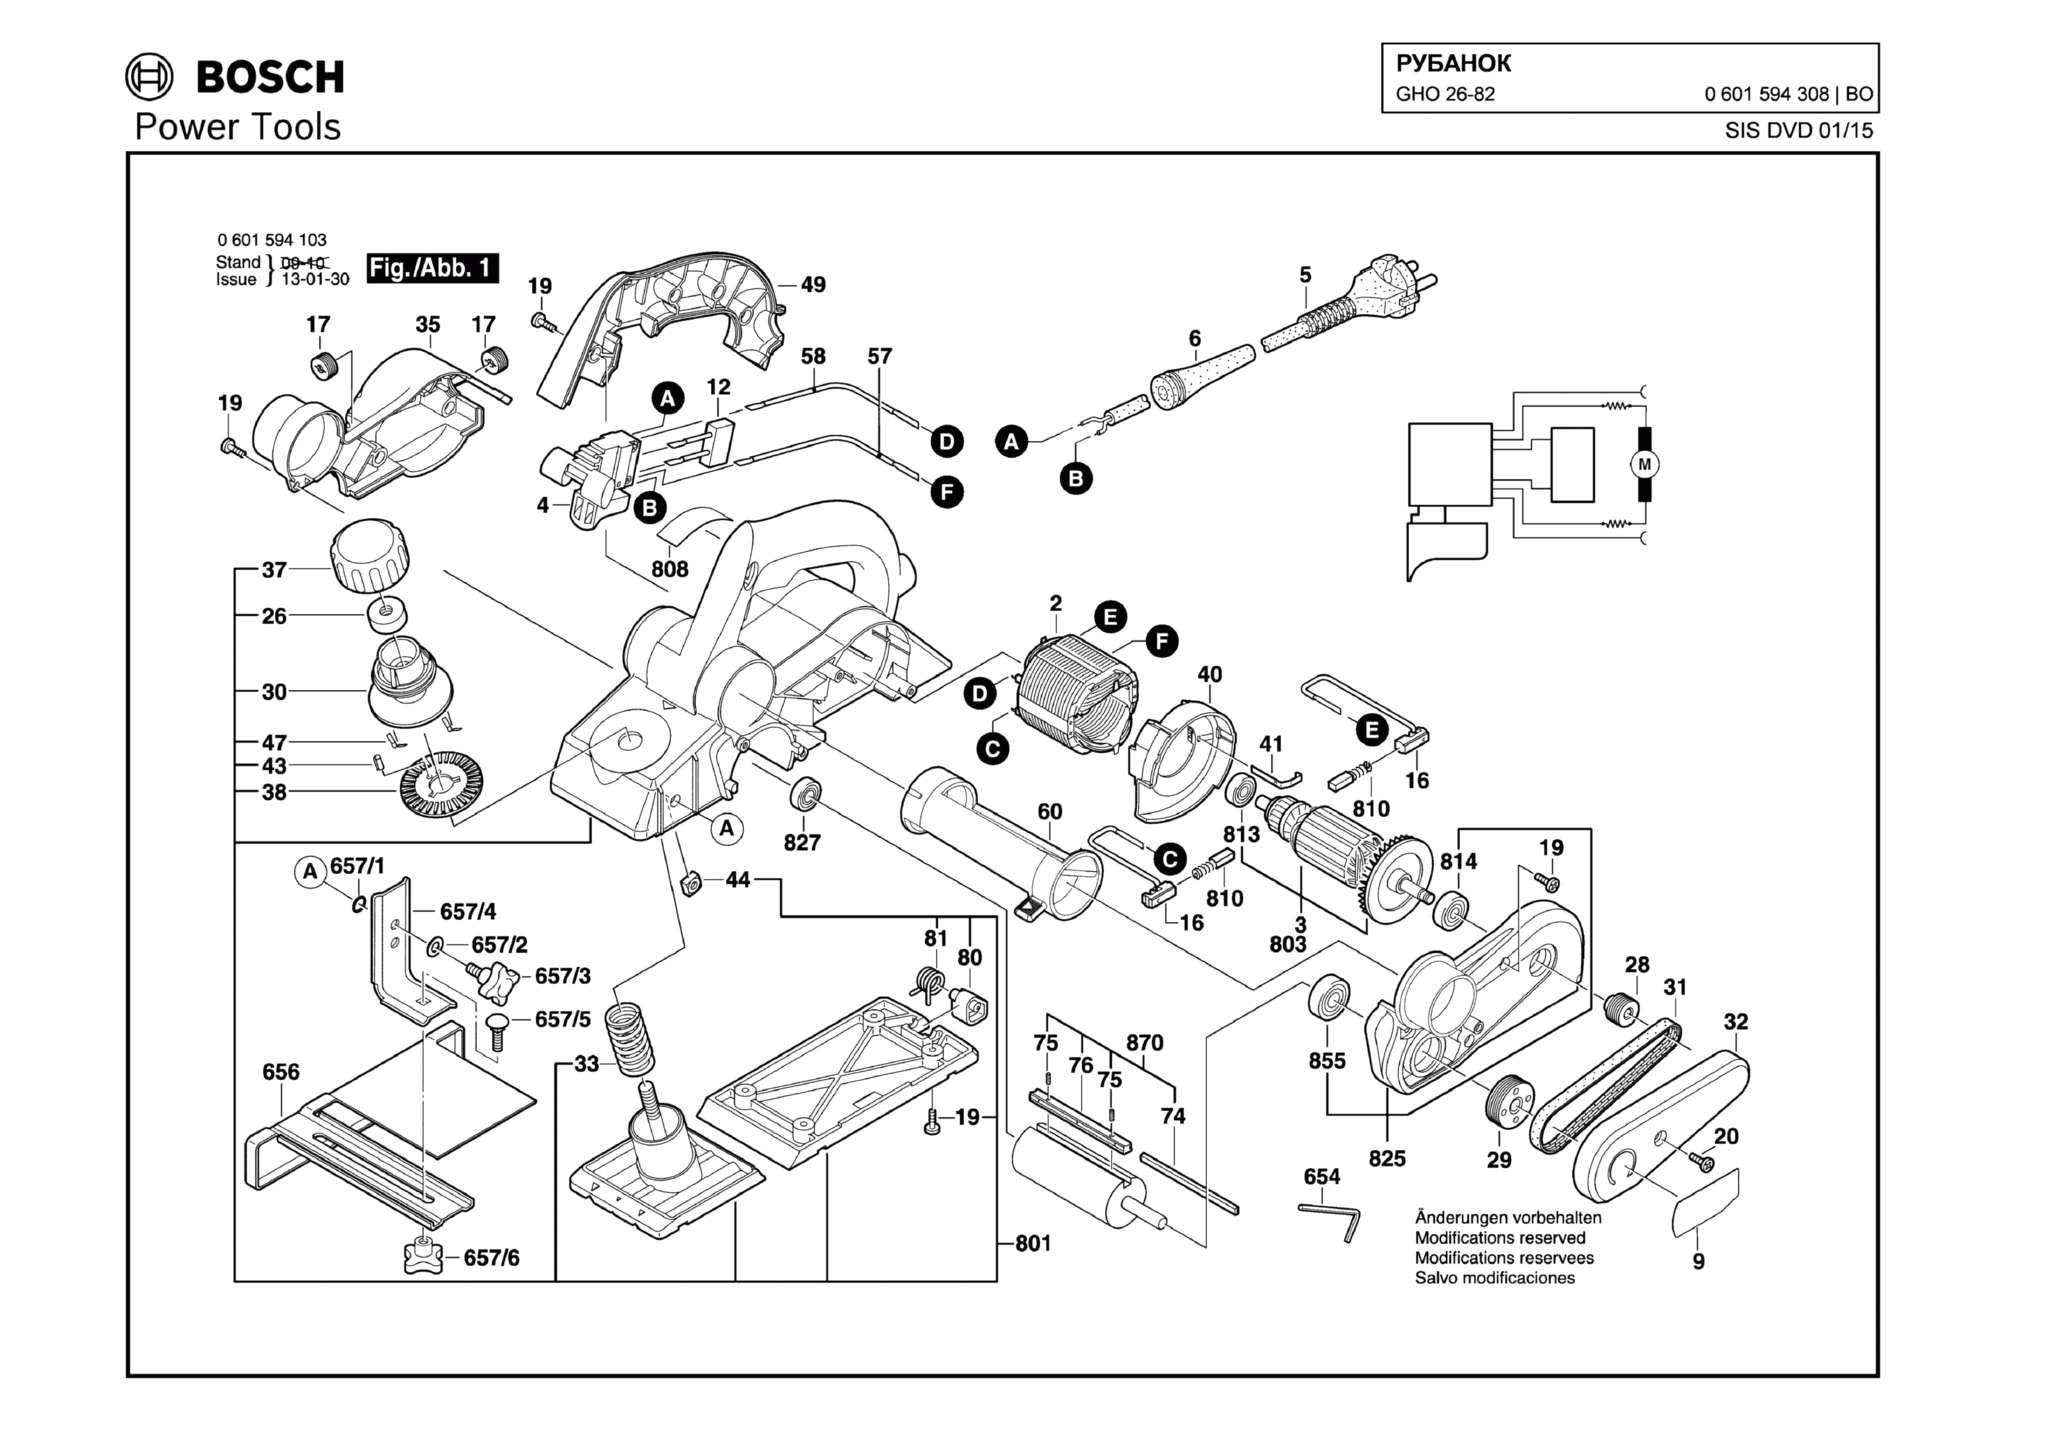 Запчасти, схема и деталировка Bosch GHO 26-82 (ТИП 0601594308)